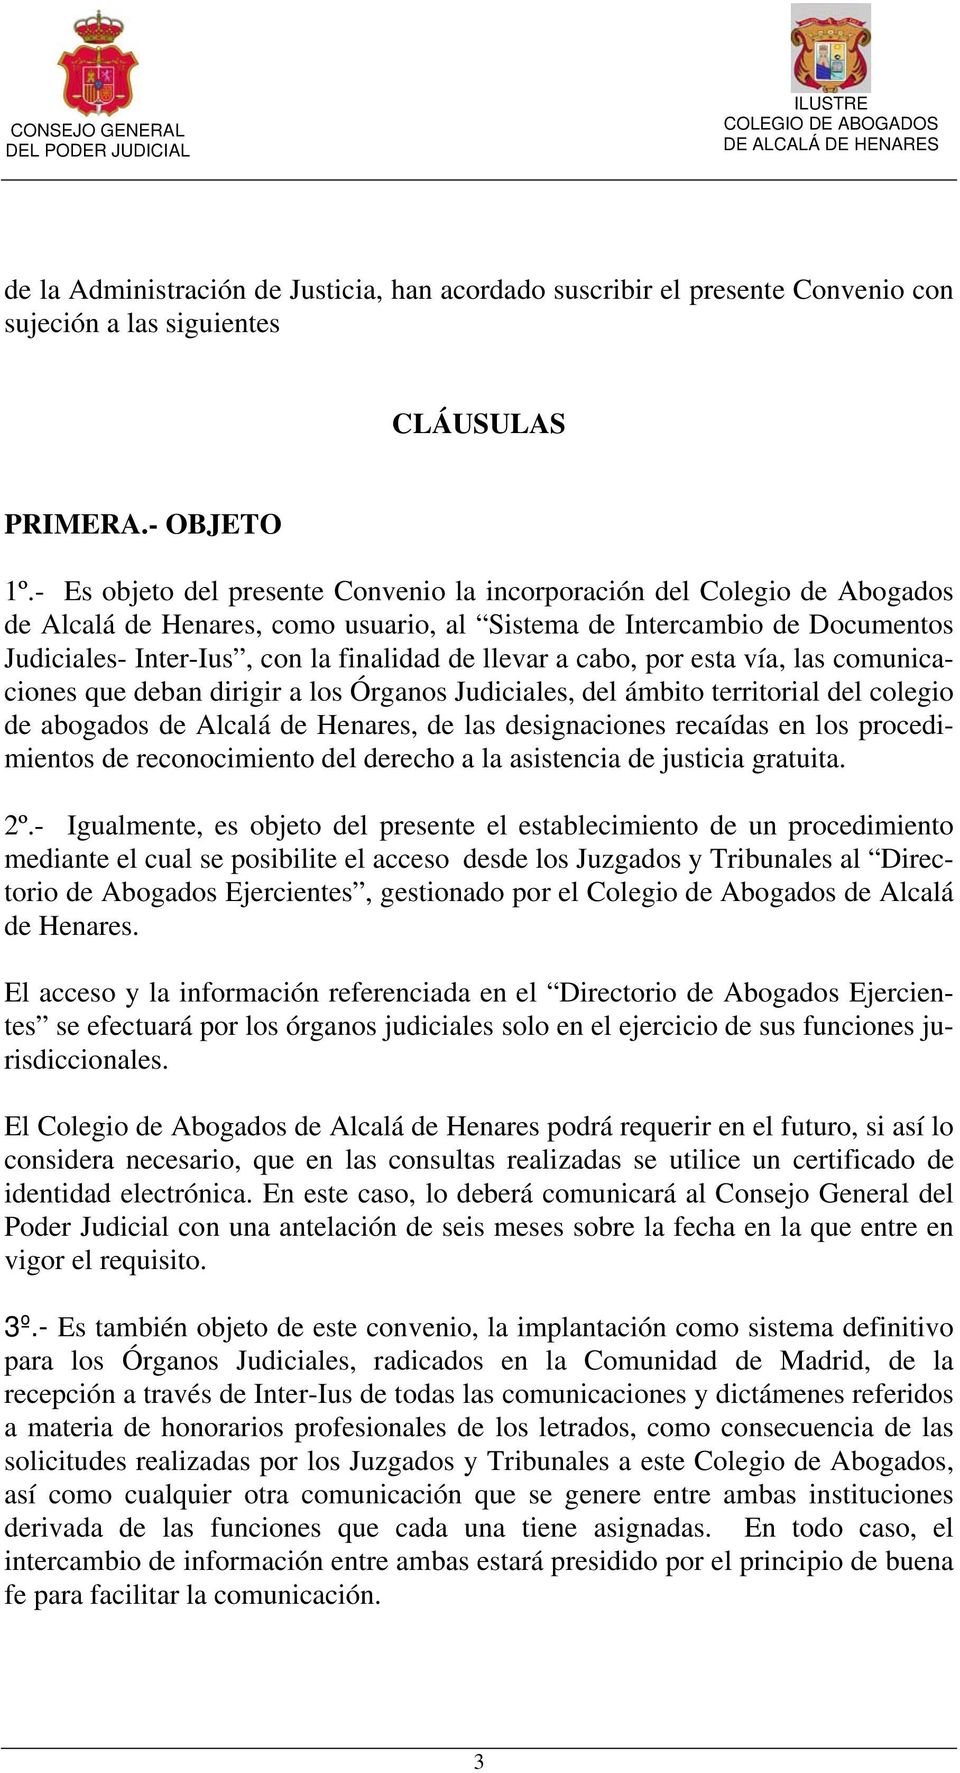 llevar a cabo, por esta vía, las comunicaciones que deban dirigir a los Órganos Judiciales, del ámbito territorial del colegio de abogados de Alcalá de Henares, de las designaciones recaídas en los